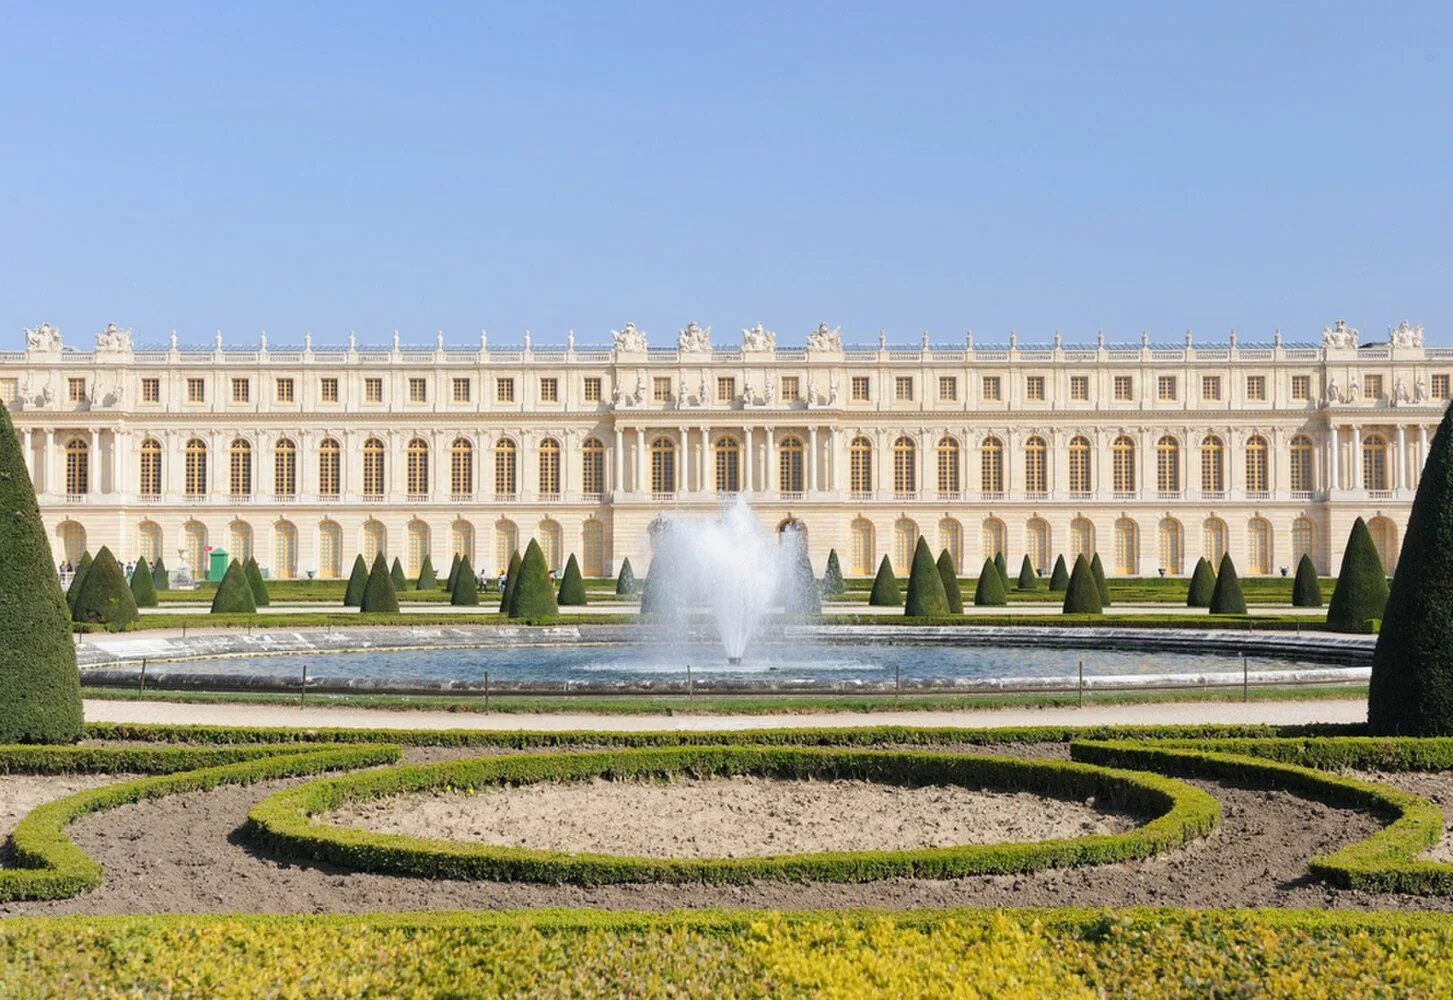 Королевский версаль. Версальский дворец. Версаль. Версальский дворцово-парковый комплекс, Франция. Королевский дворец в Версале. Дворец и парк в Версале Франция.